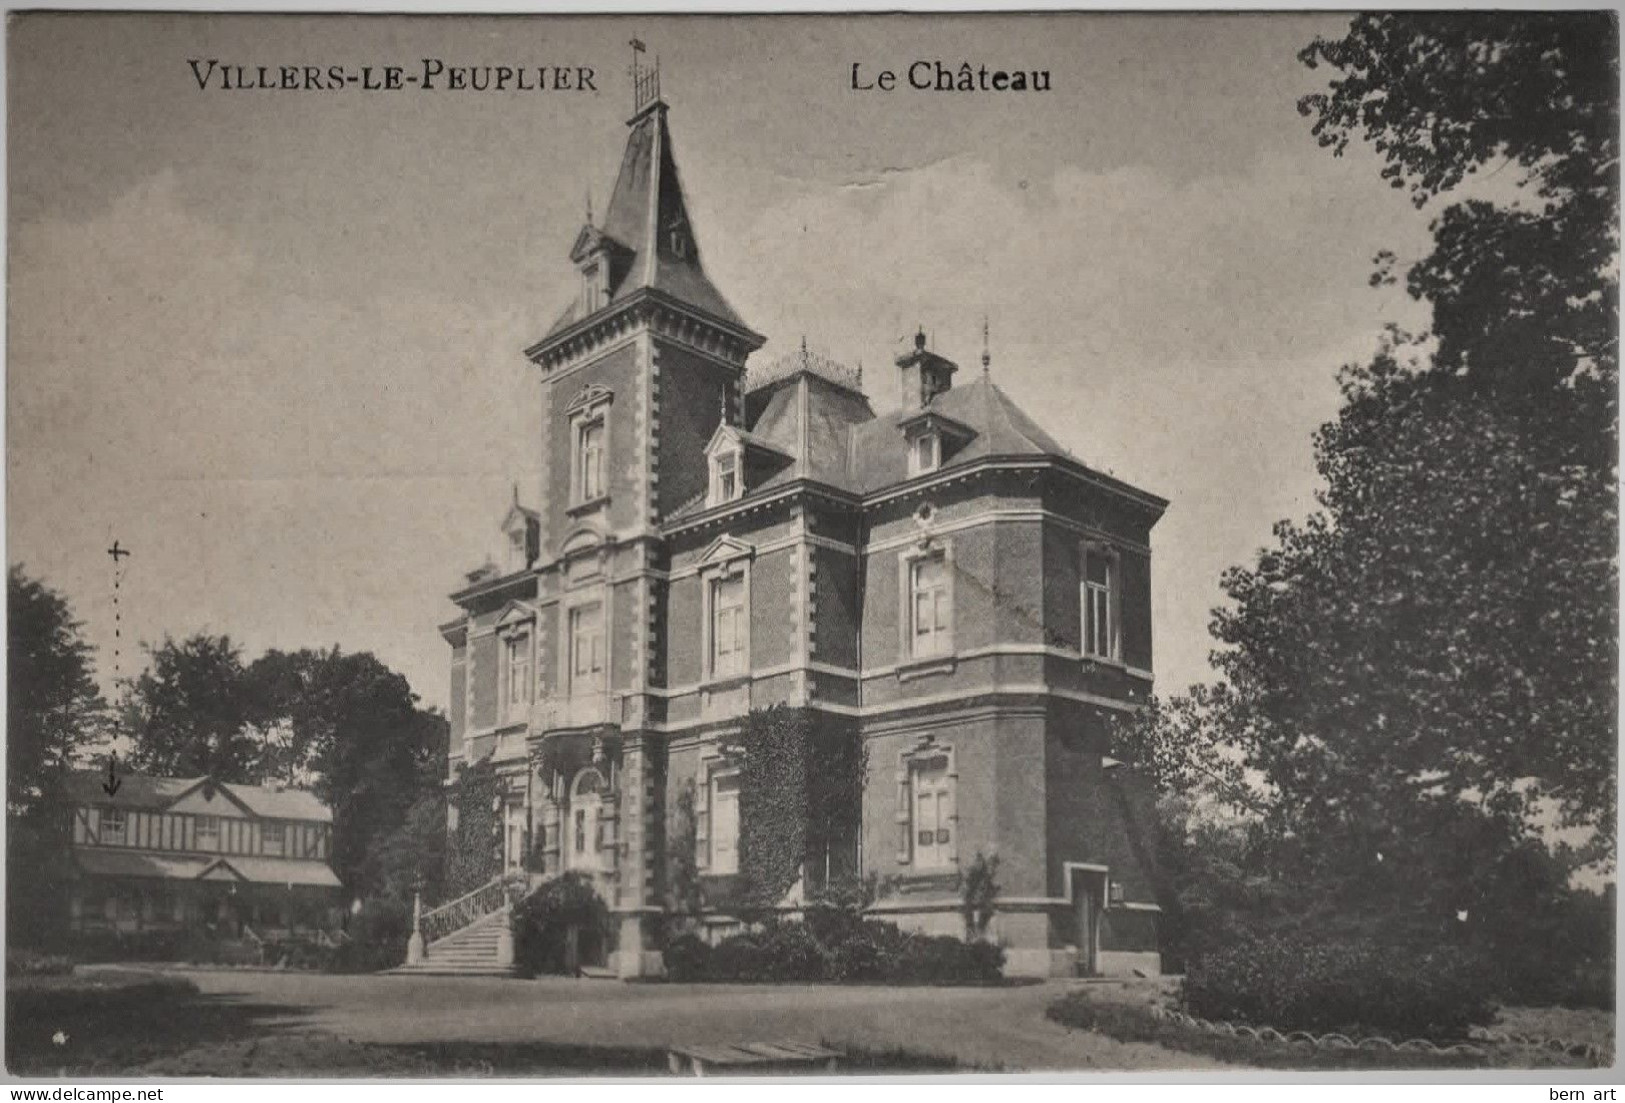 CPA. Villiers-le-Peuplier "Le Château". N° Sans. Edit.: Emile Dumont. Editeur, Liège. - Hannuit